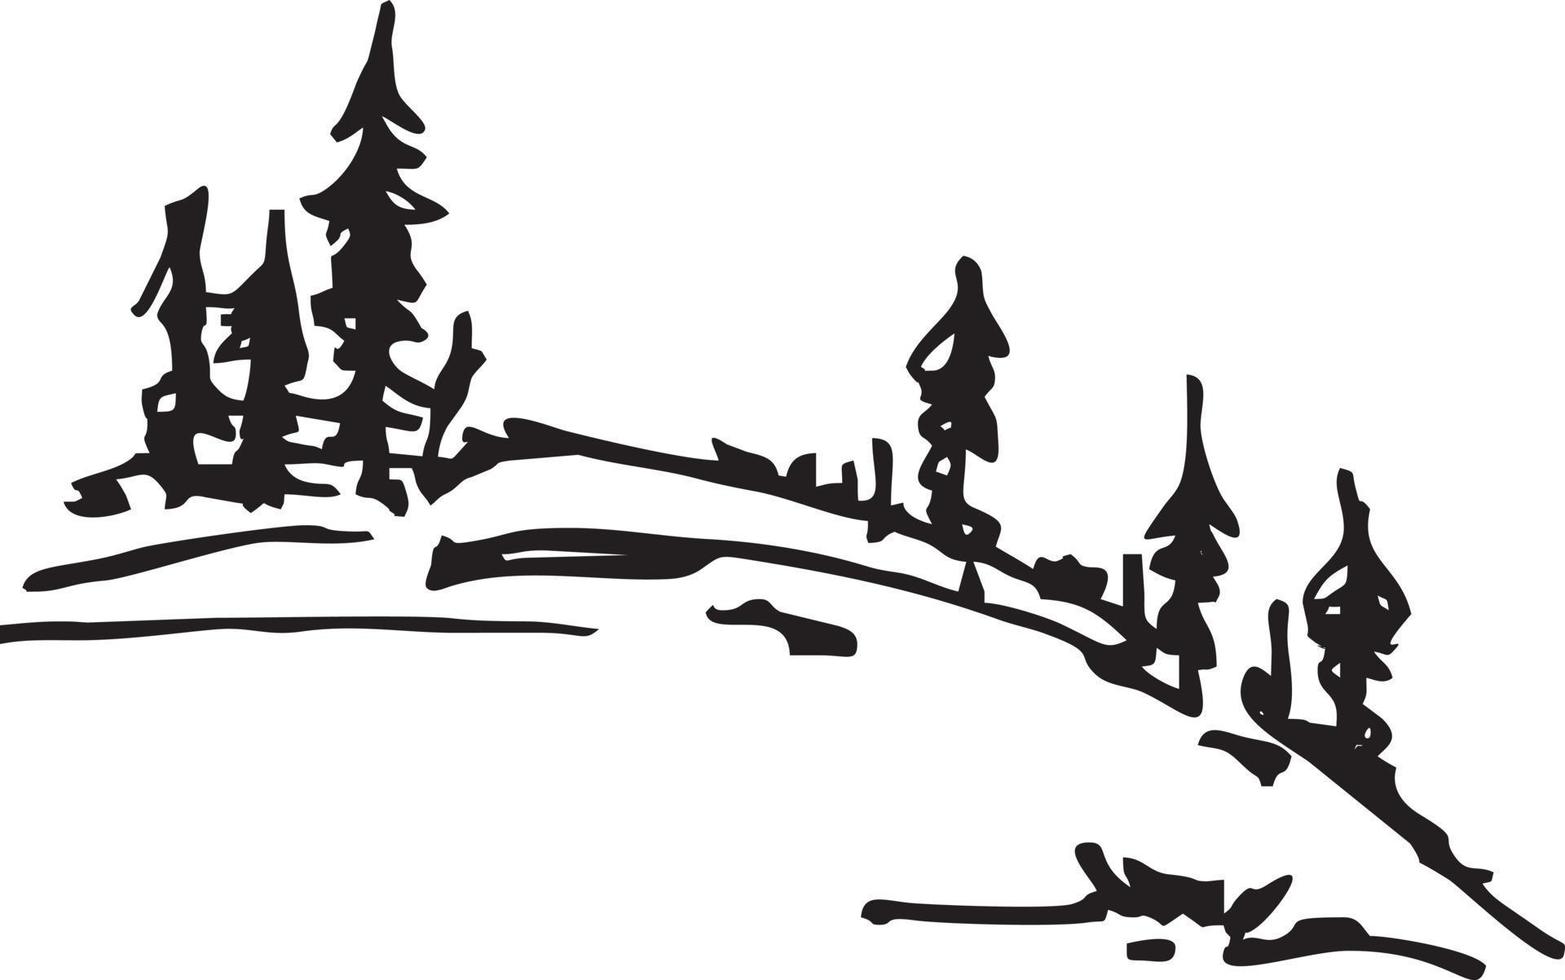 Nadelbäume auf der Hügelskizze. Fichten oder Kiefern auf einem Hügel Silhouette schwarz-weiße Naturlandschaft. gut für logo, illustration, druck auf kleidung vektor